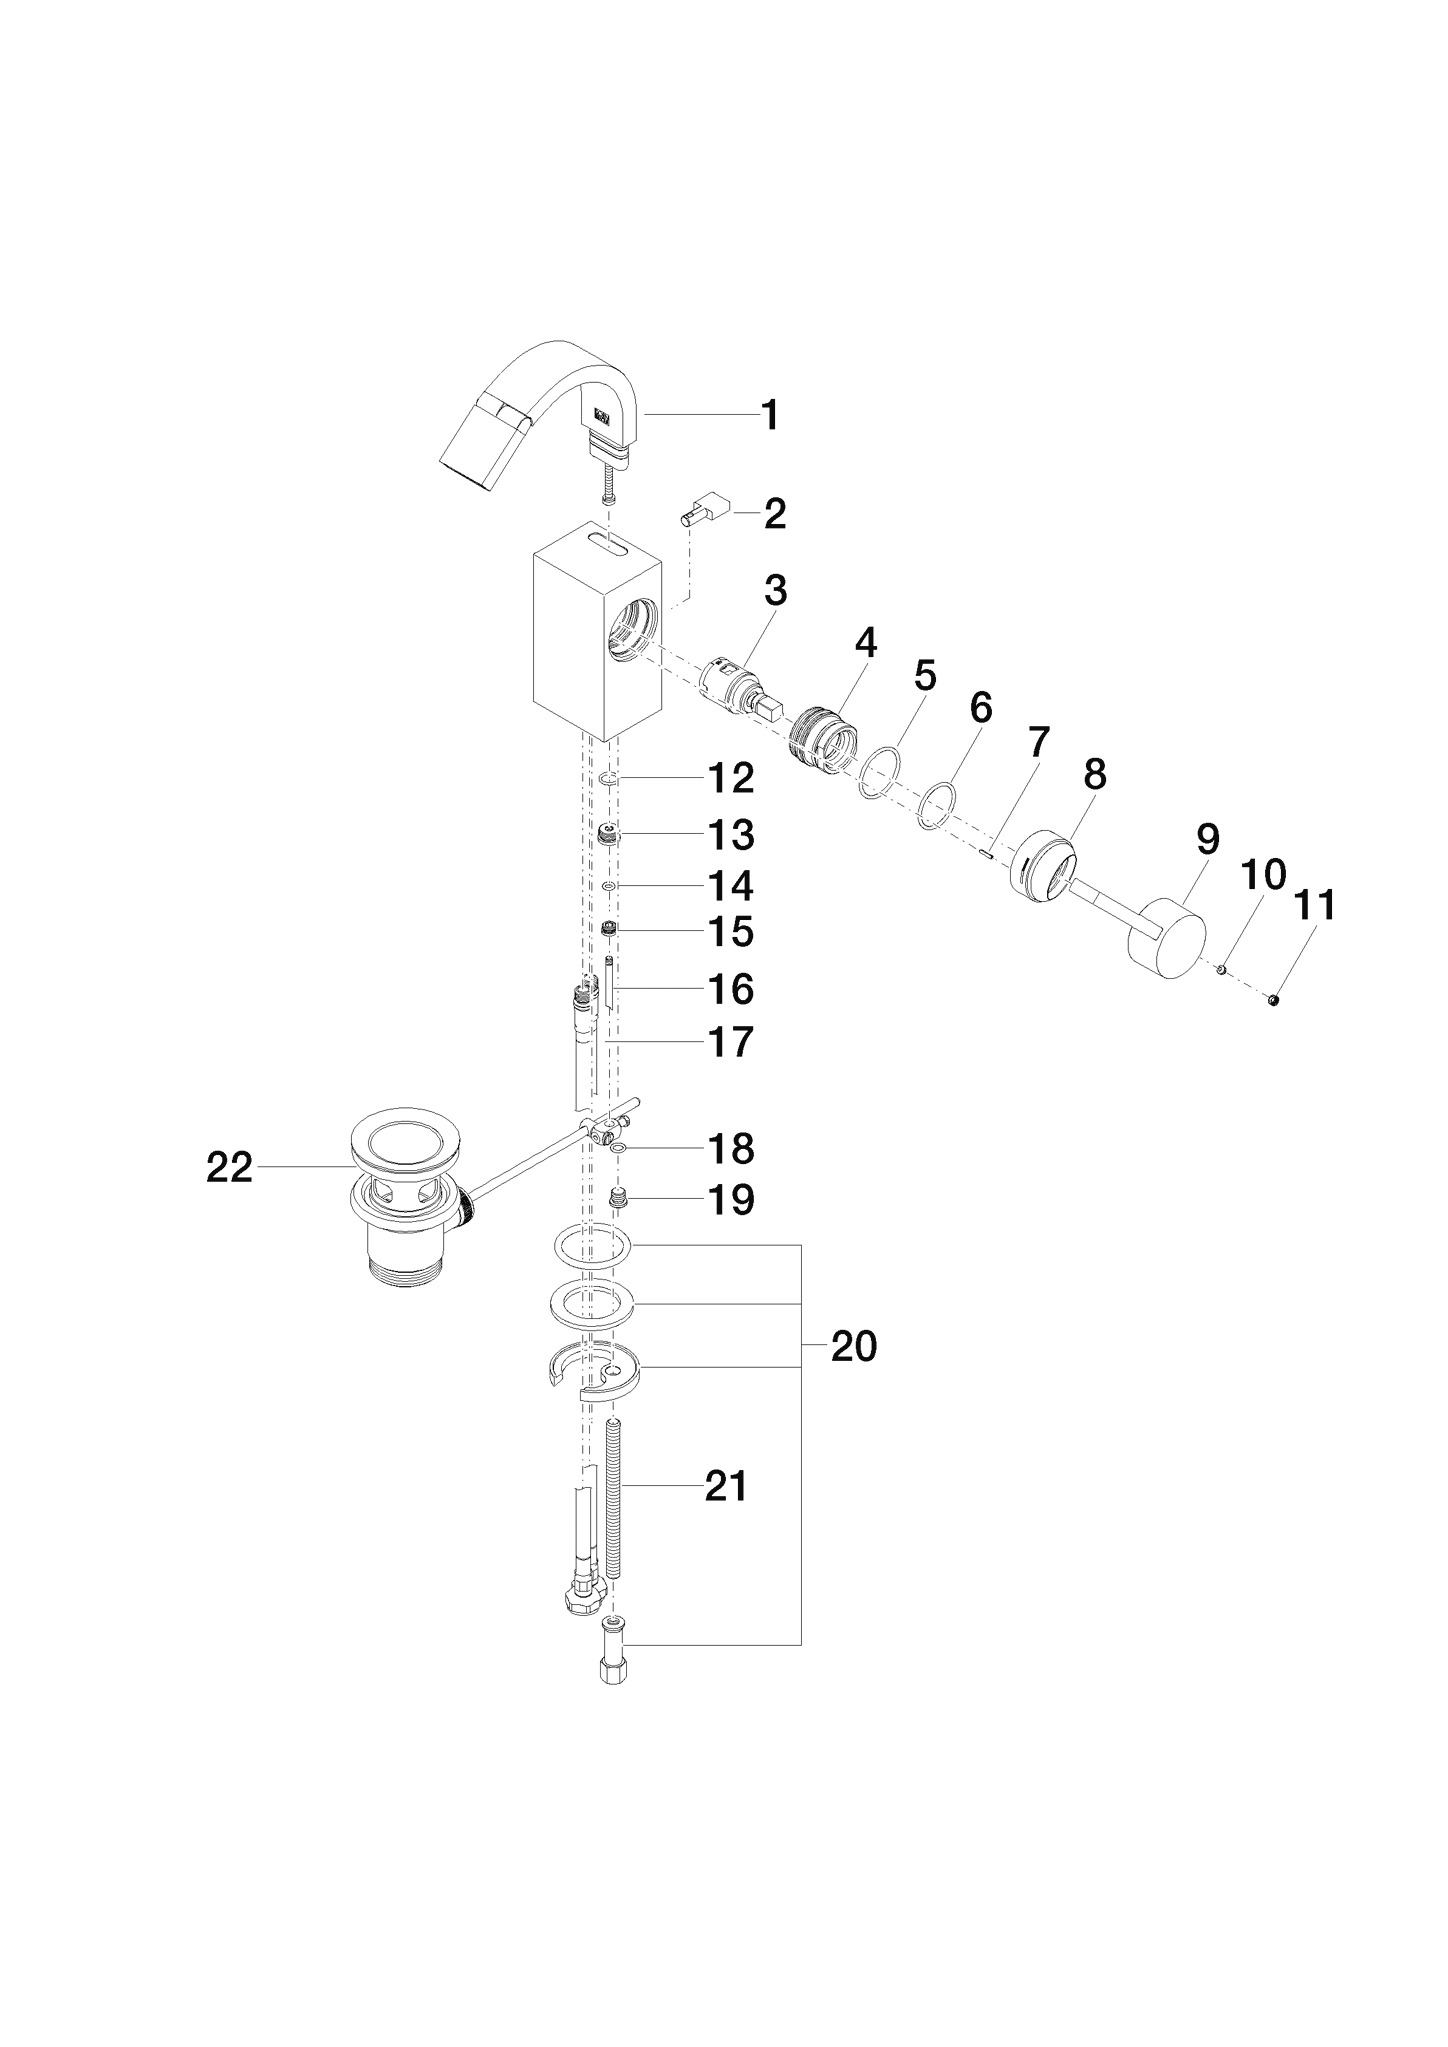 Picture of DORNBRACHT Single-lever bidet mixer with pop-up waste - Cyprum #33600782-49